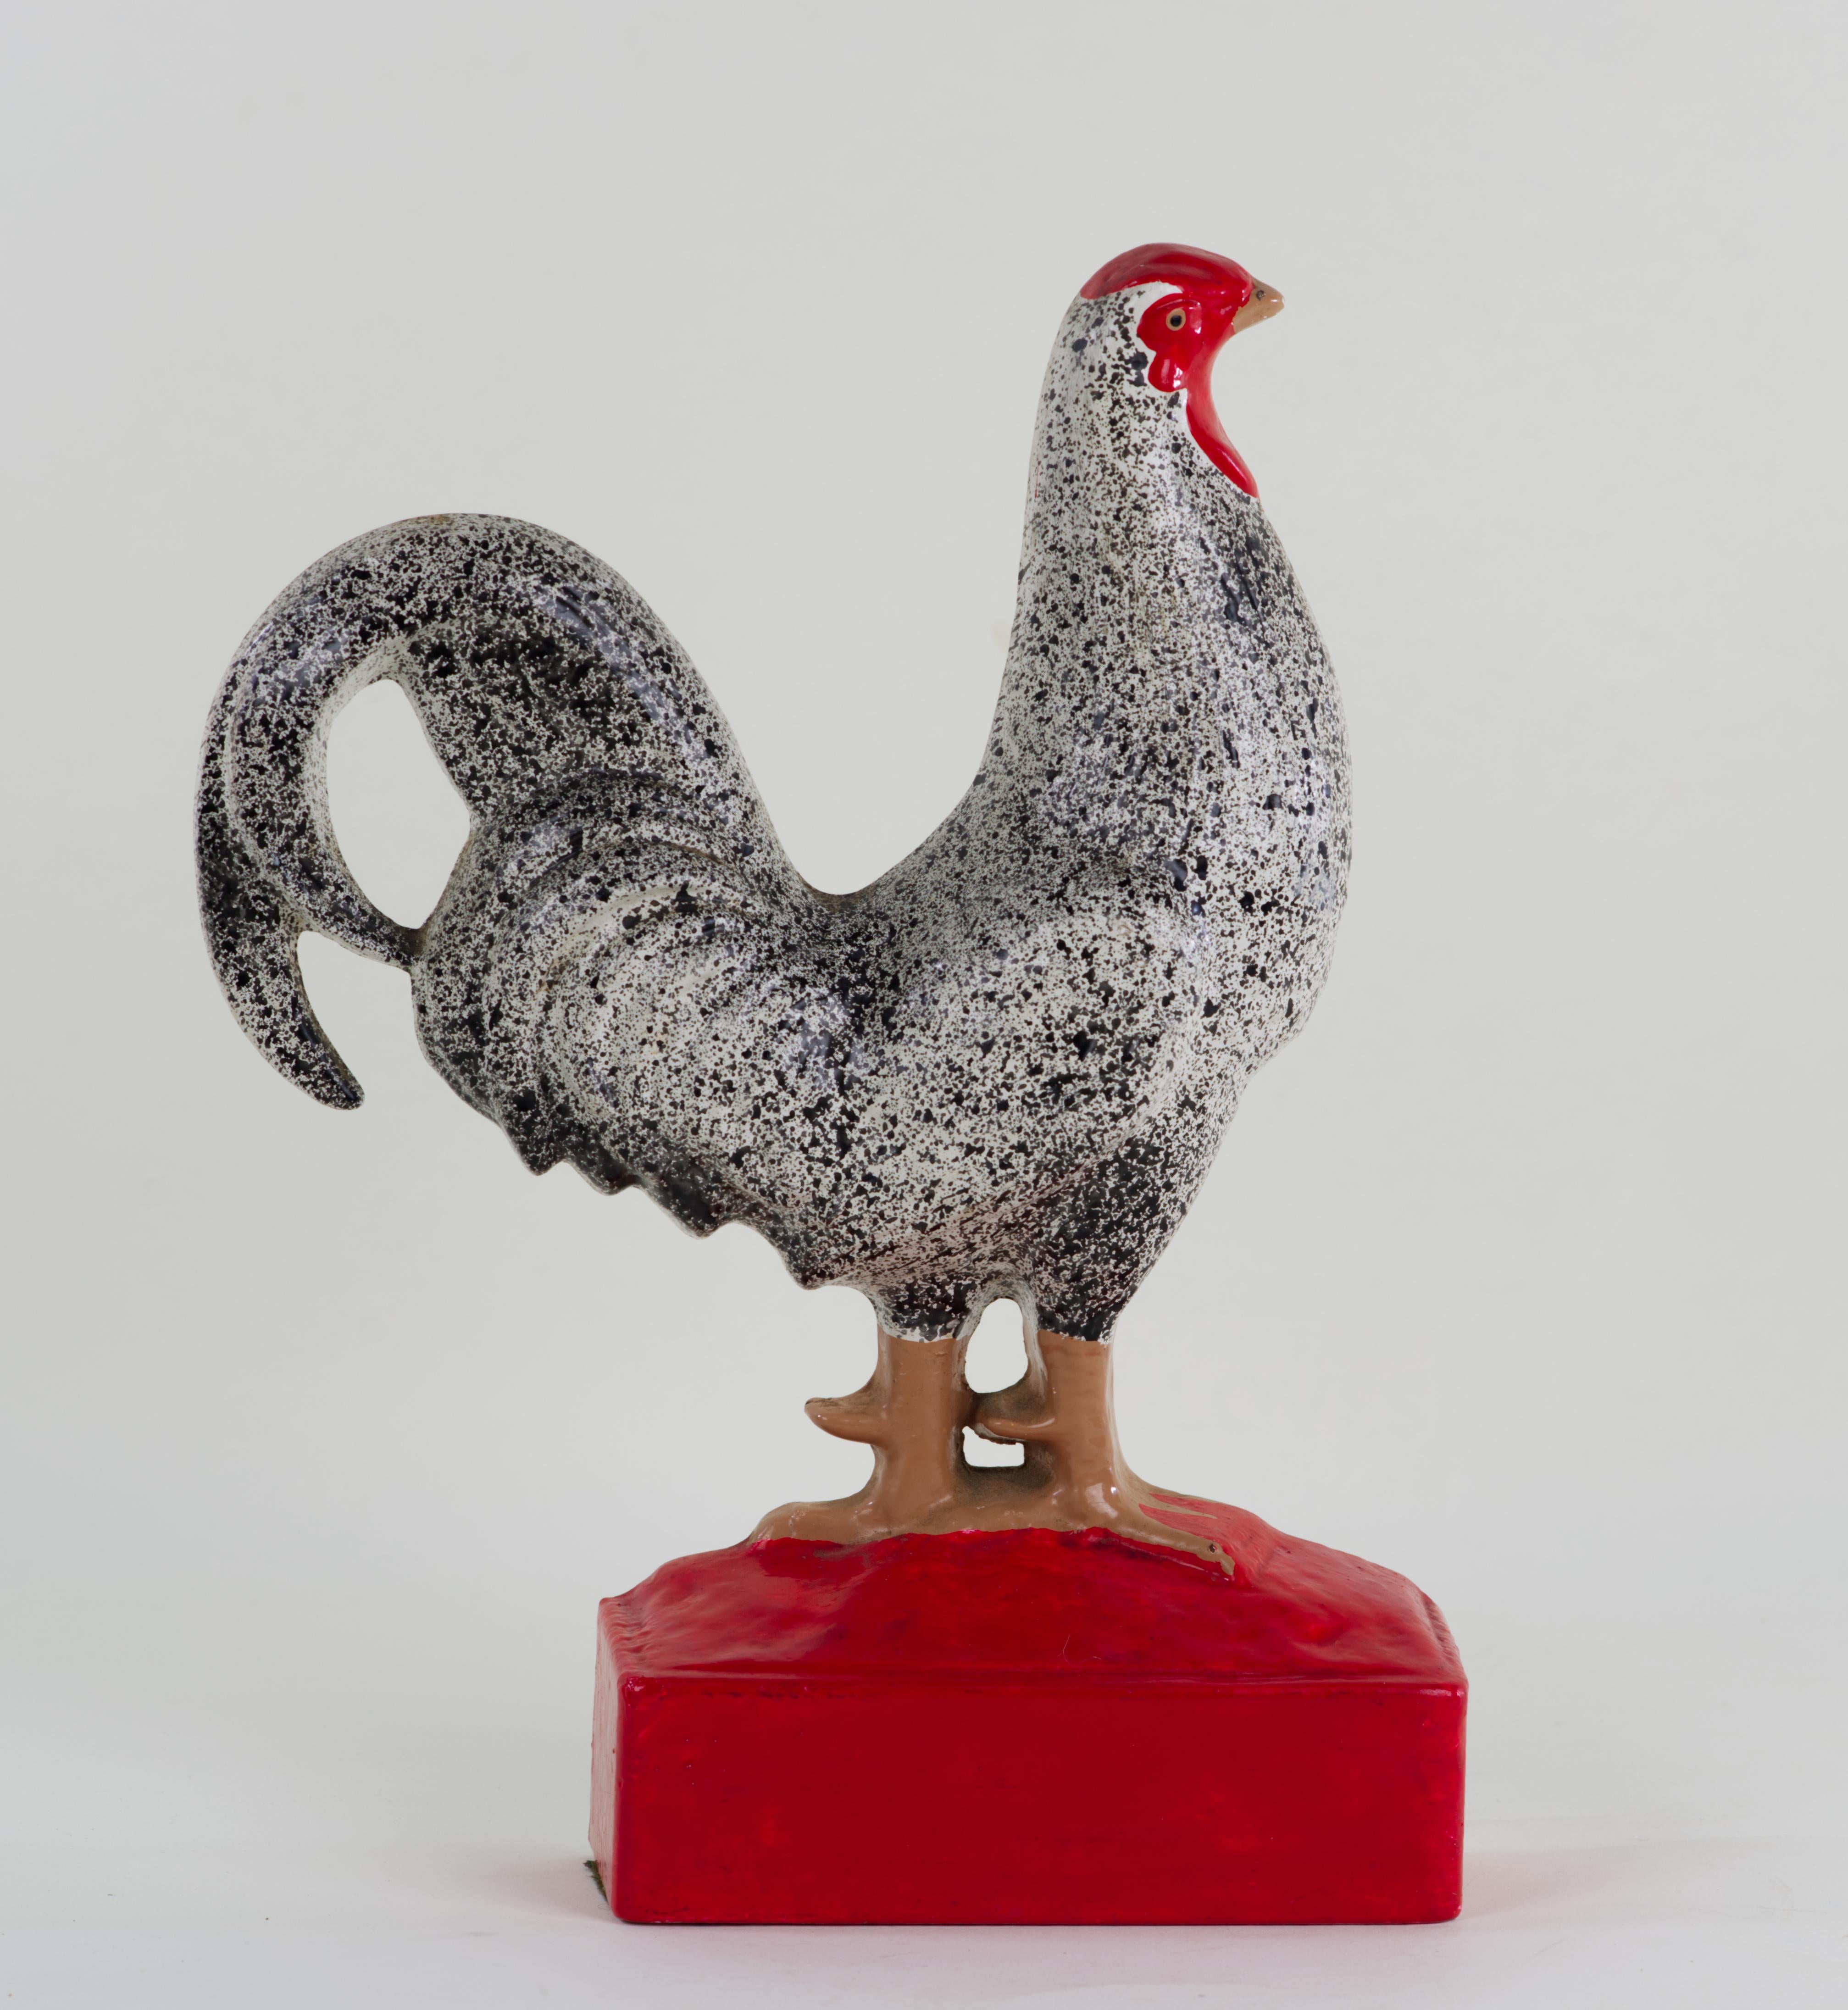  La figurine de poulet en fonte émaillée peut être utilisée comme butoir de porte ou comme élément de décoration. La pièce est très détaillée et les plumes de la queue et des ailes ainsi que la structure de la tête sont moulées séparément. Le corps